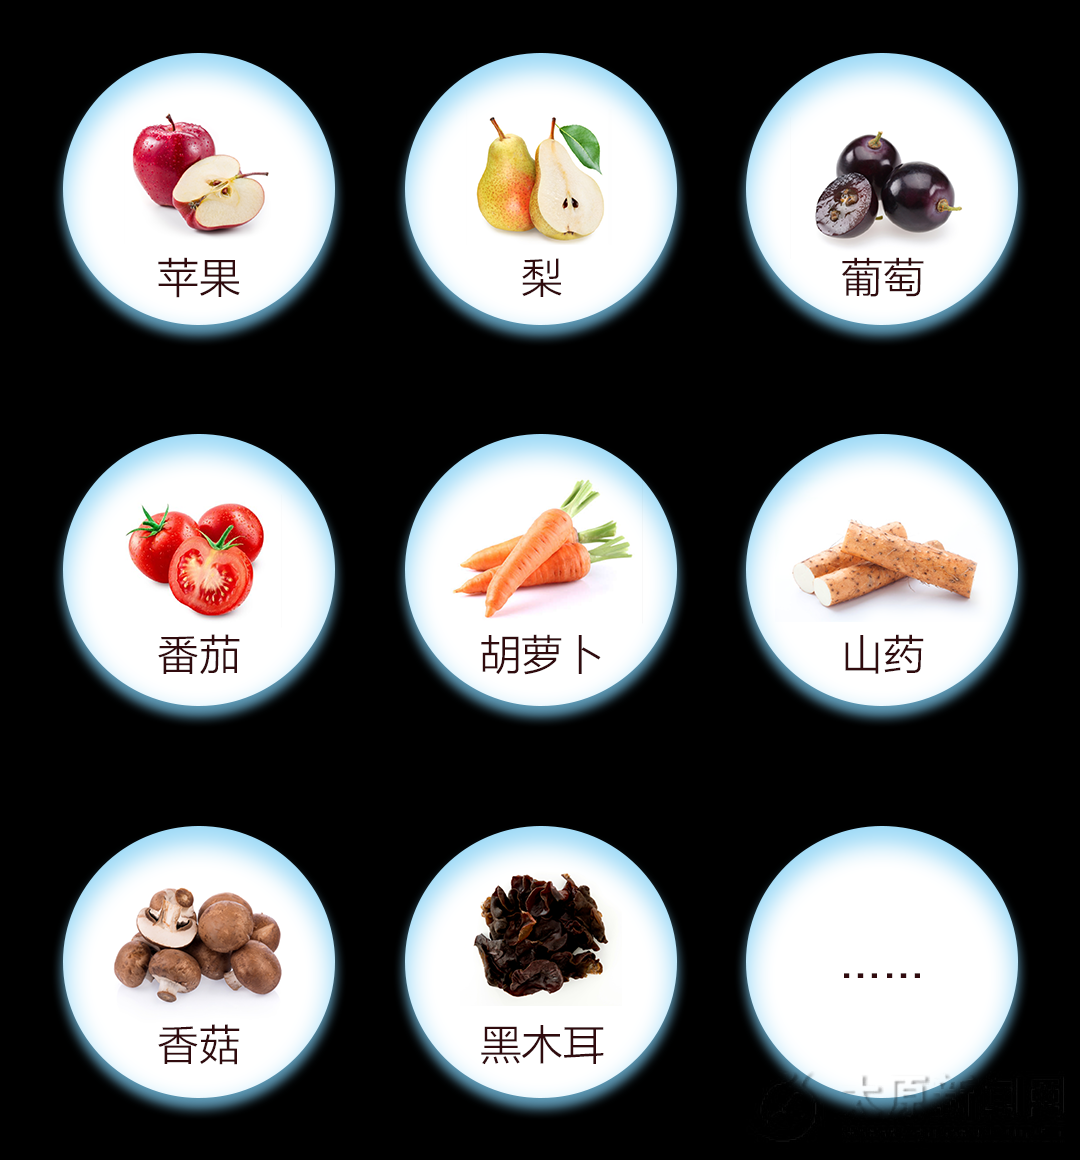 完美公司“十七萃酵素发酵果蔬汁饮料”通过广东省名优高新技术产品认定